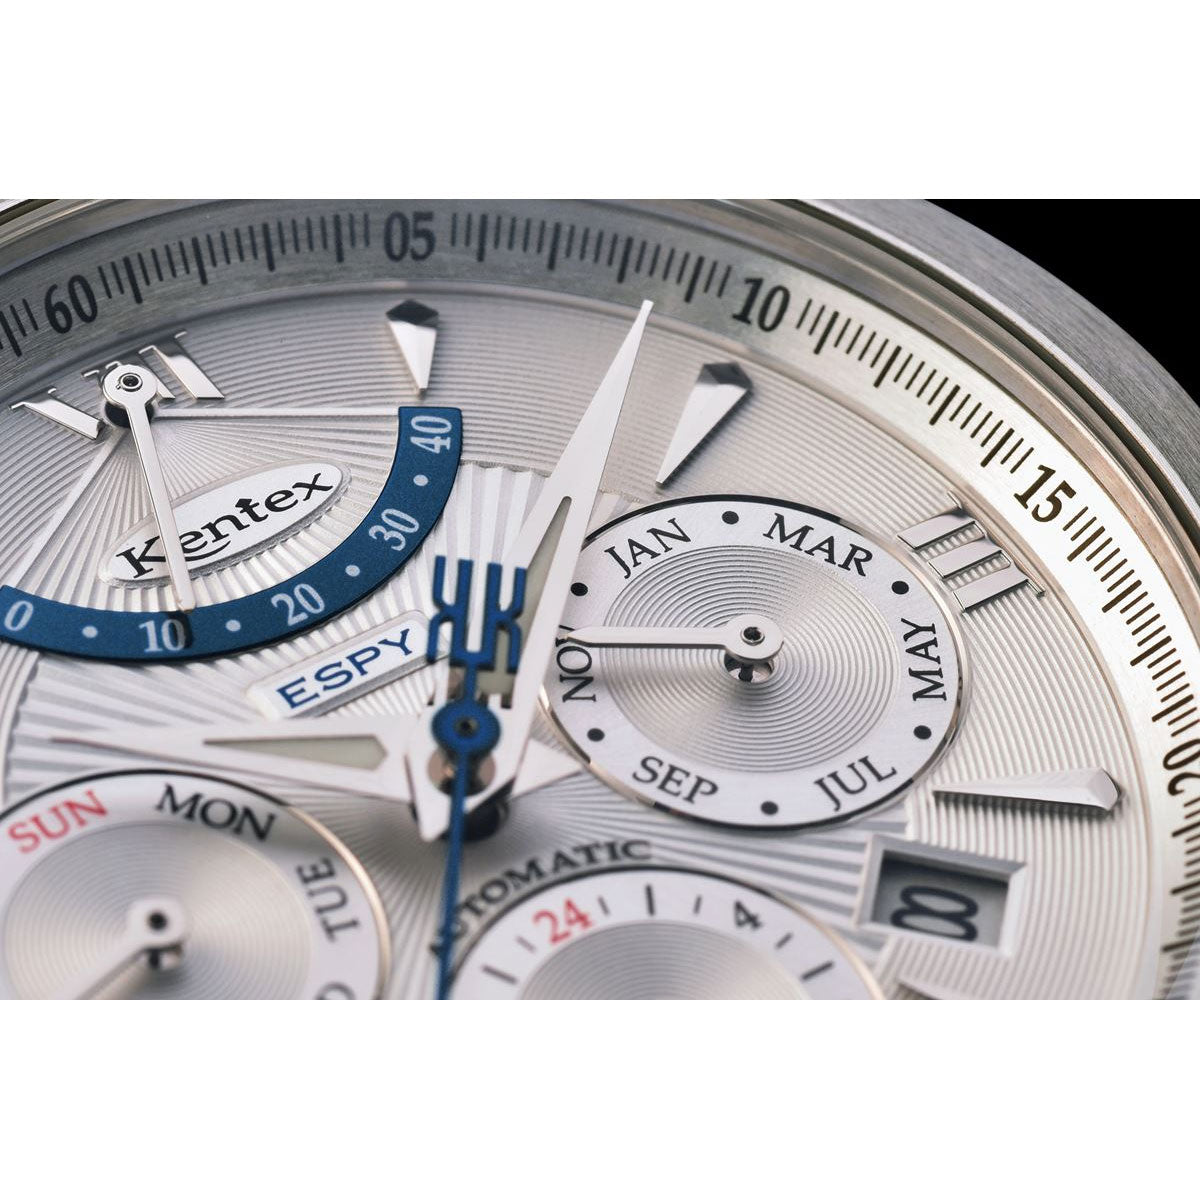 ケンテックス KENTEX 腕時計 時計 メンズ 日本製 自動巻き マルチファンクション エスパイ アクティブ2 ESPY ACTIVE II E546M-8 シルバー